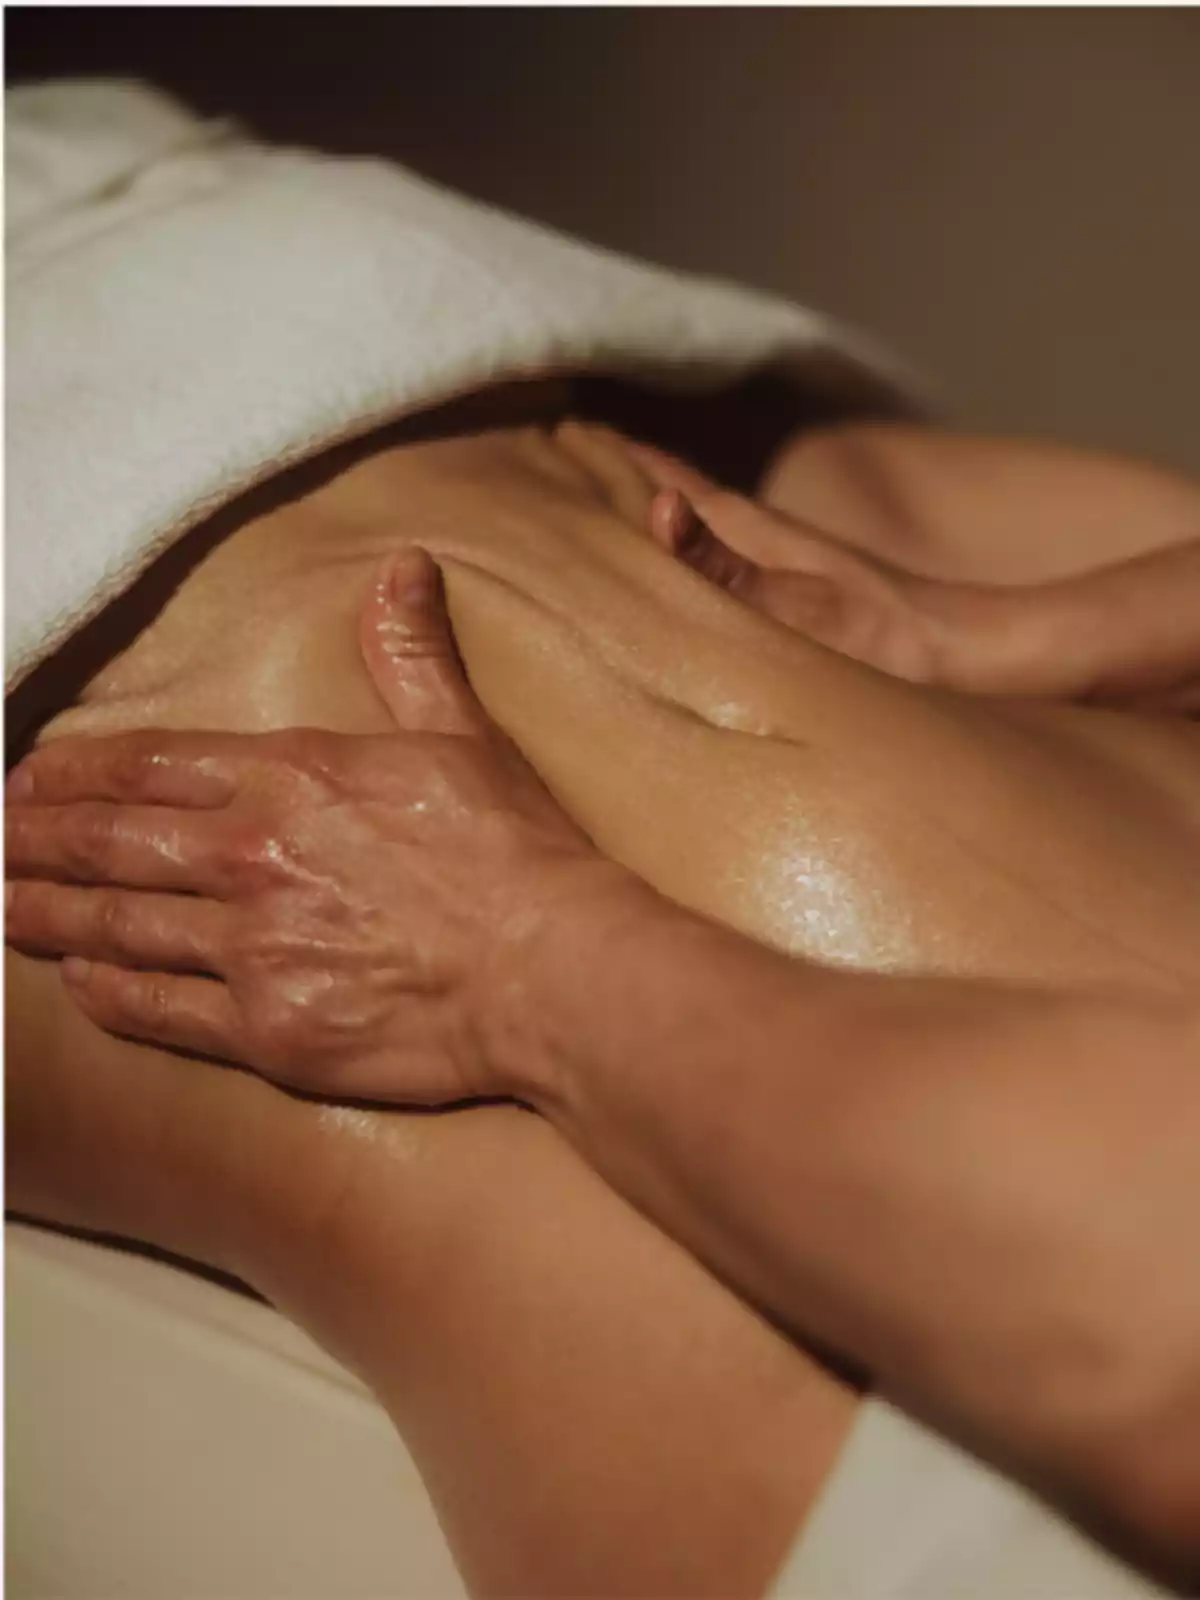 Persona recibiendo un masaje en la espalda con una toalla blanca cubriendo la parte superior del cuerpo.